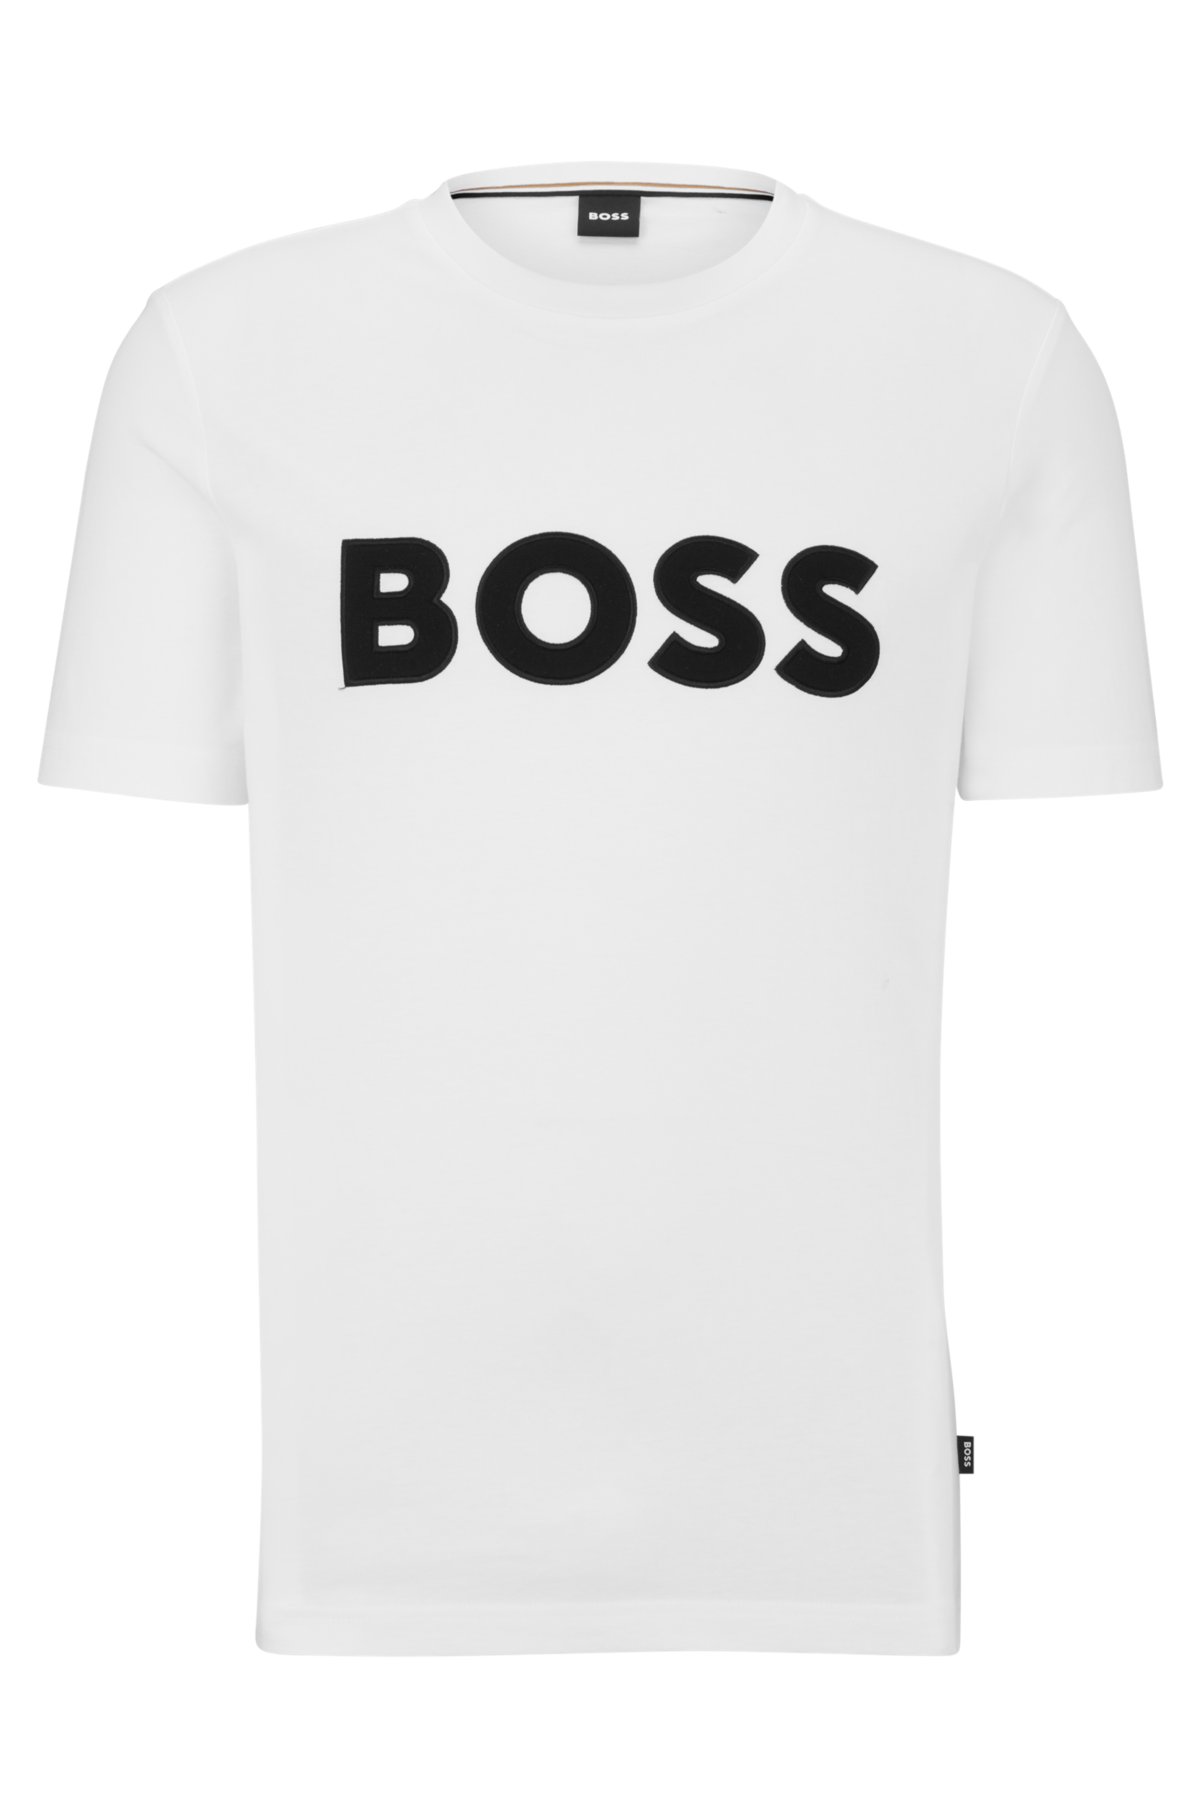 BOSS - Cotton-jersey appliqué with logo regular-fit T-shirt